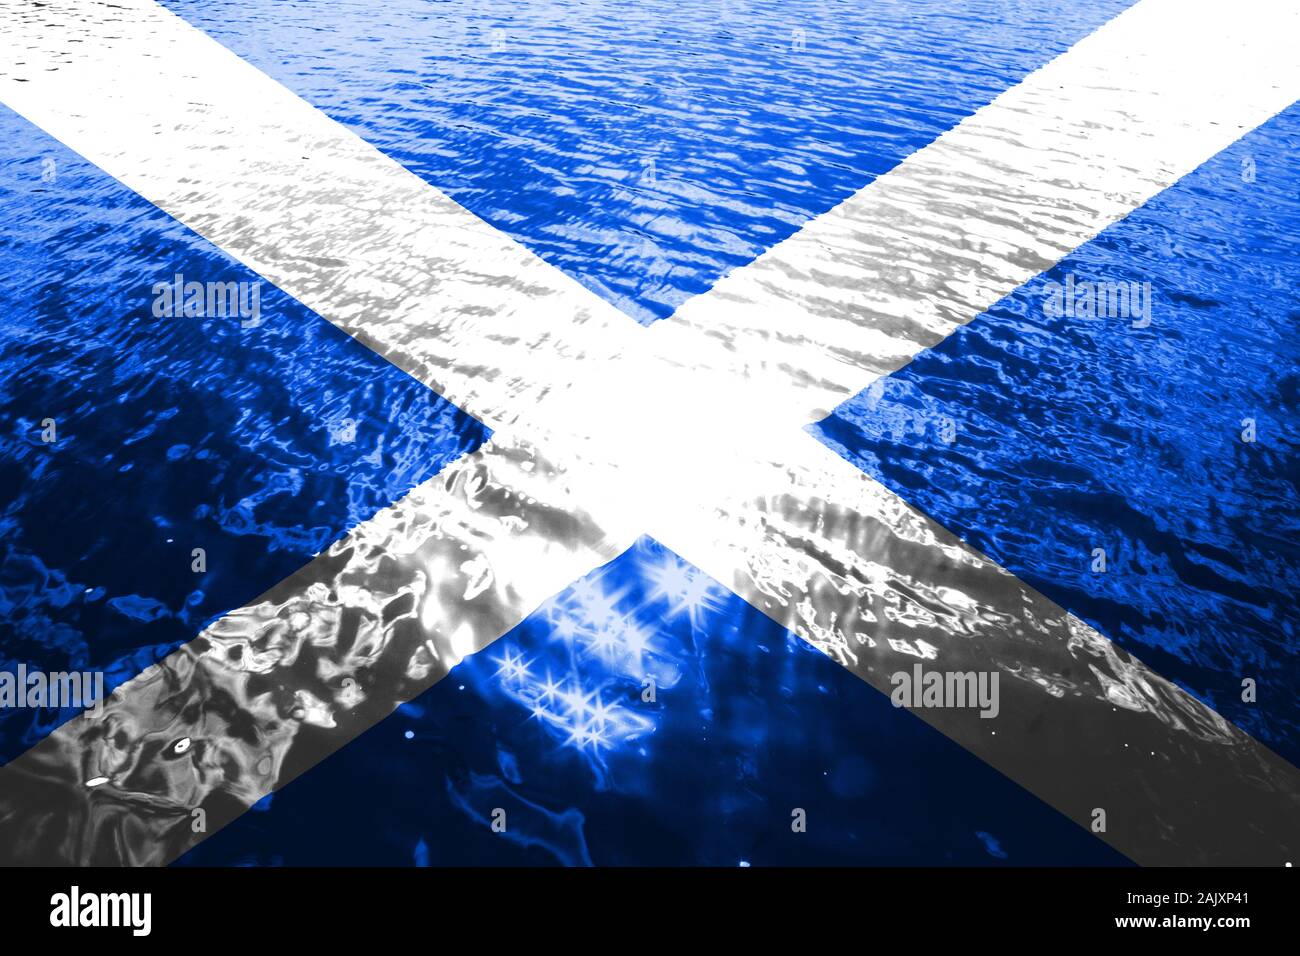 Bandiera scozzese Foto Stock